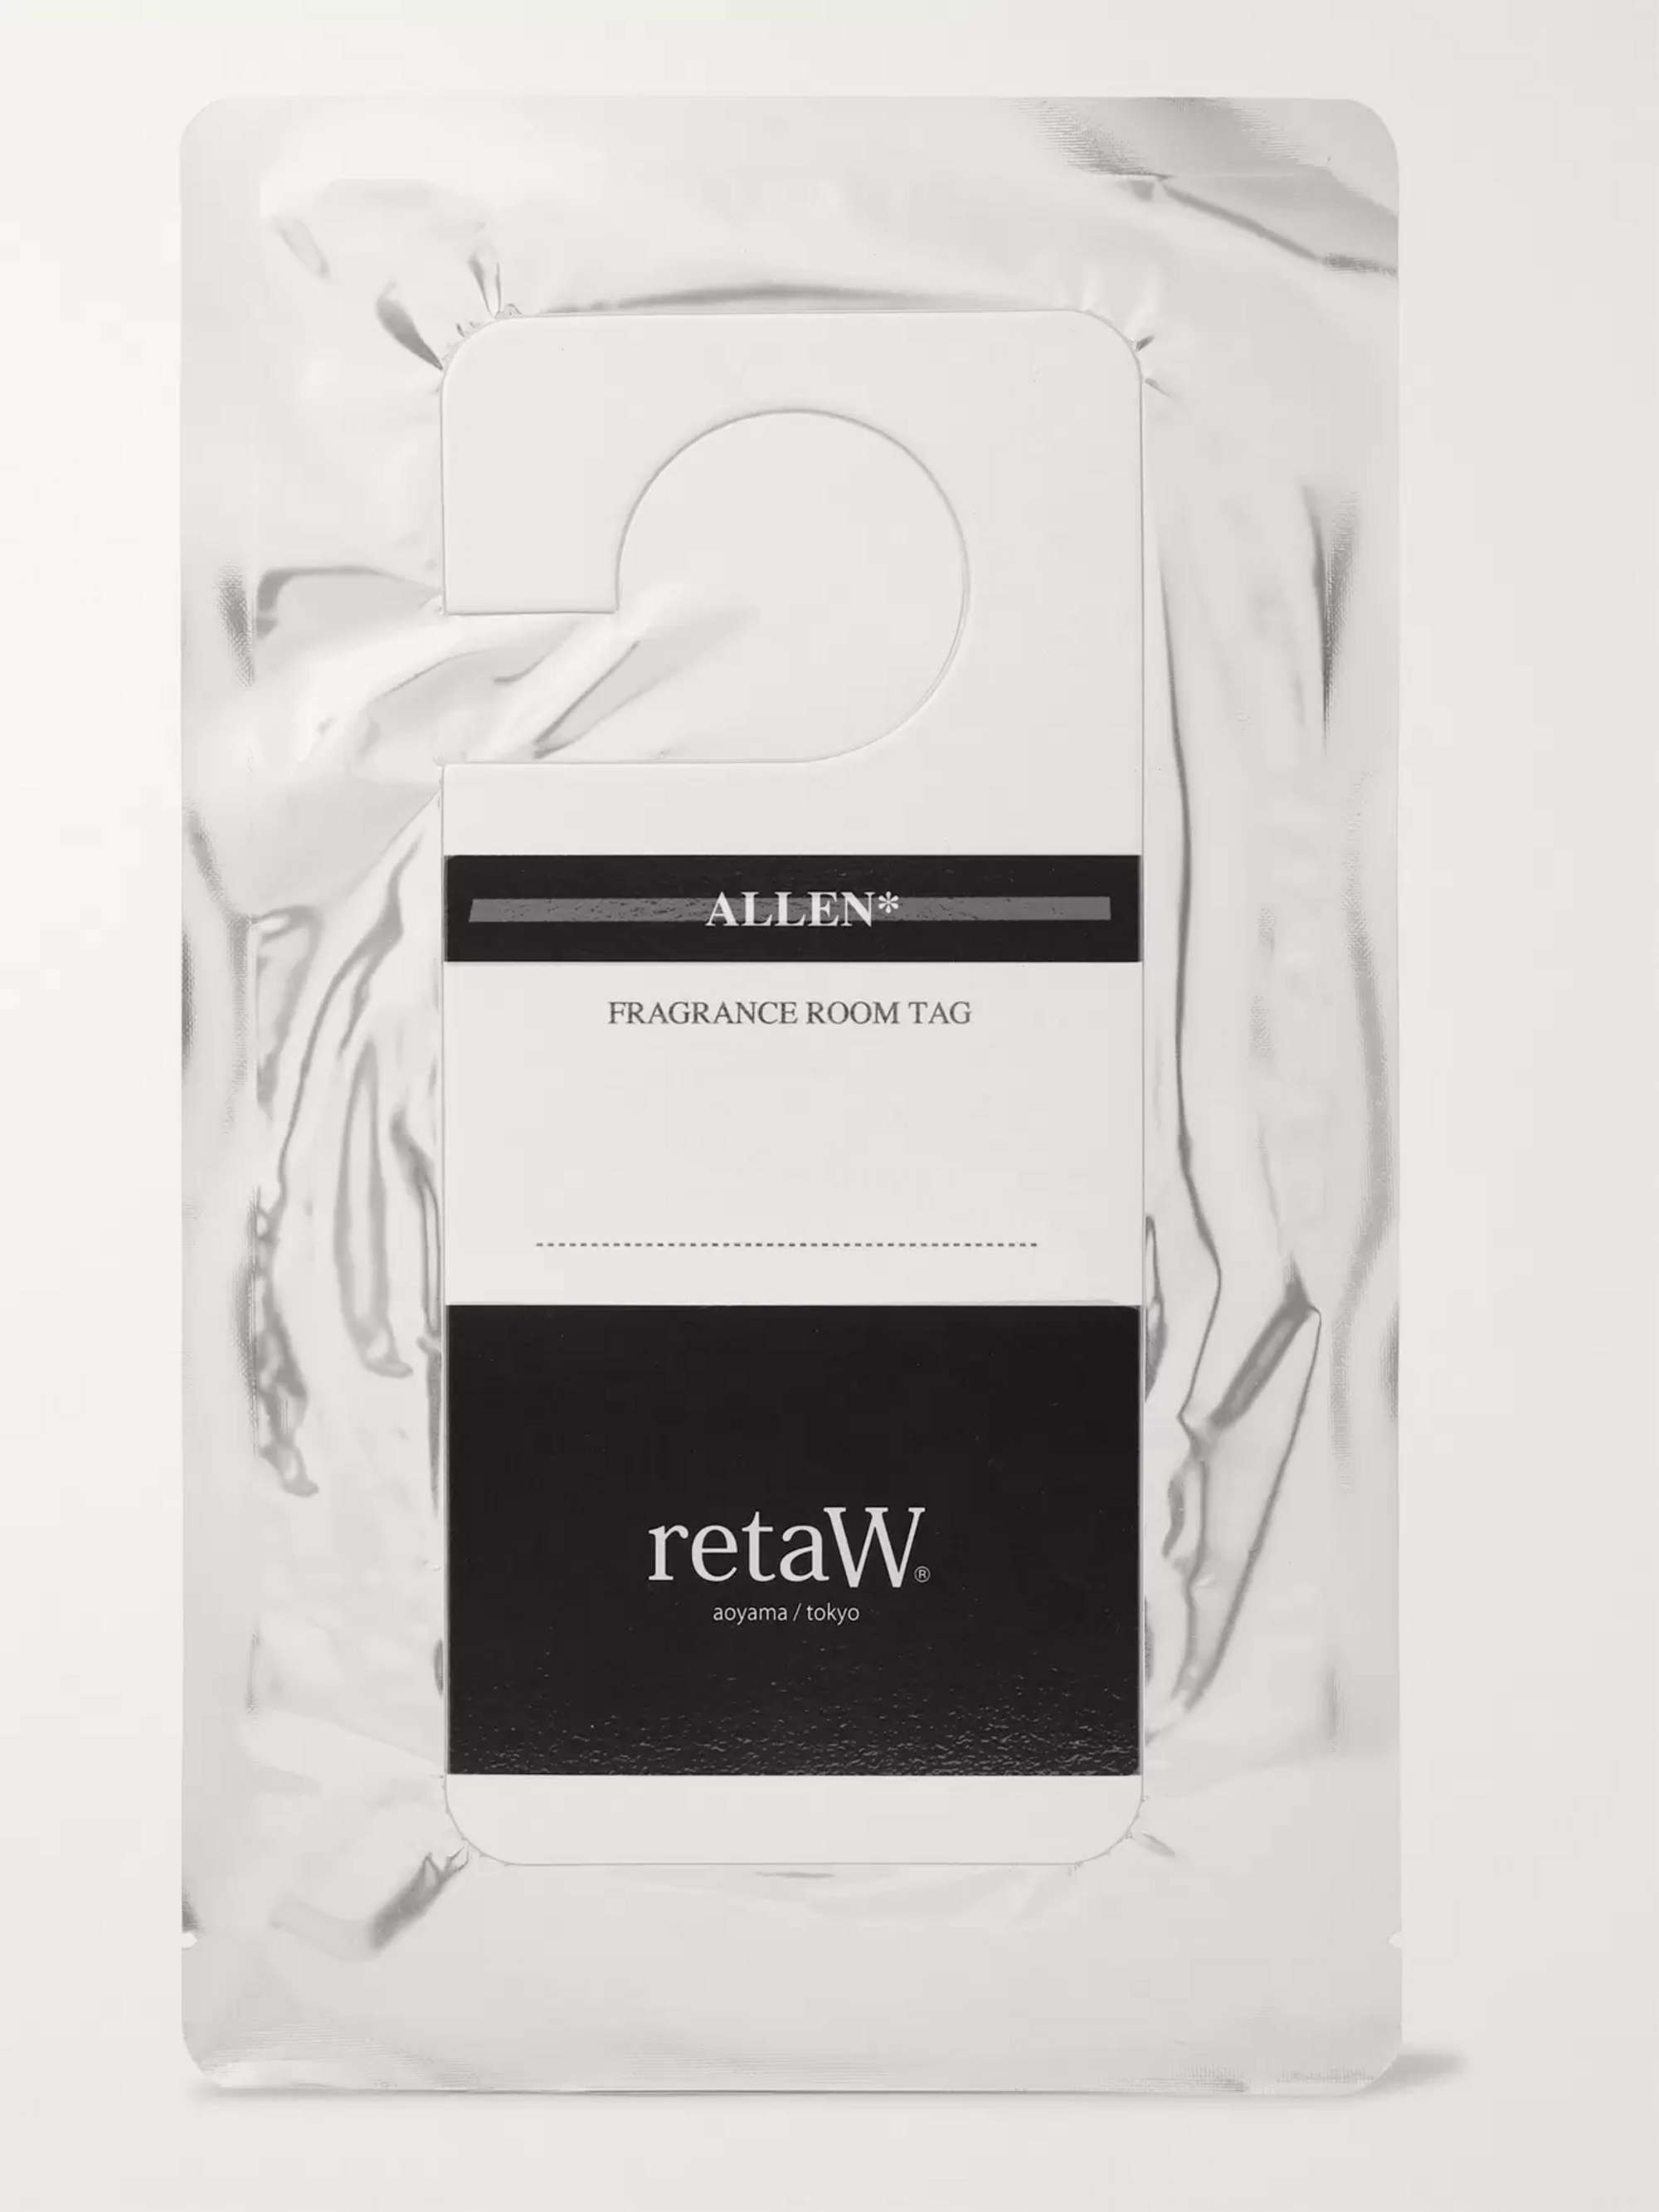 RETAW Fragrance Room Tag - Allen